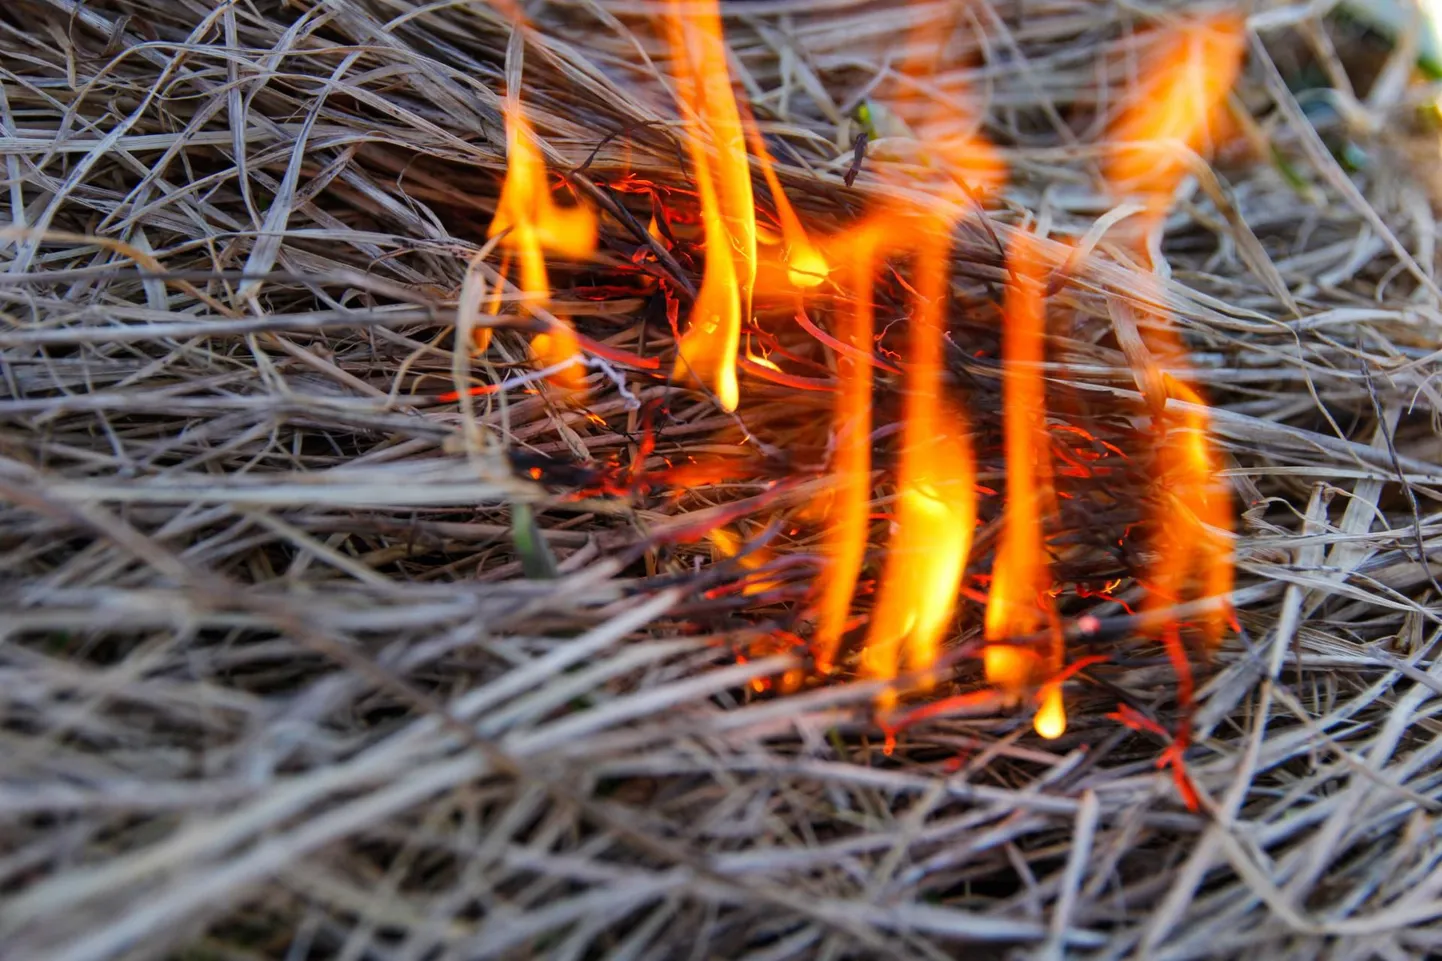 Seni pole üheski eeskirjas ega seaduses lehtede põletamise keeldu kirjas, seega pole okste ja lehtede põletamine aias keelatud ega karistatav. Foto on illustreeriv.